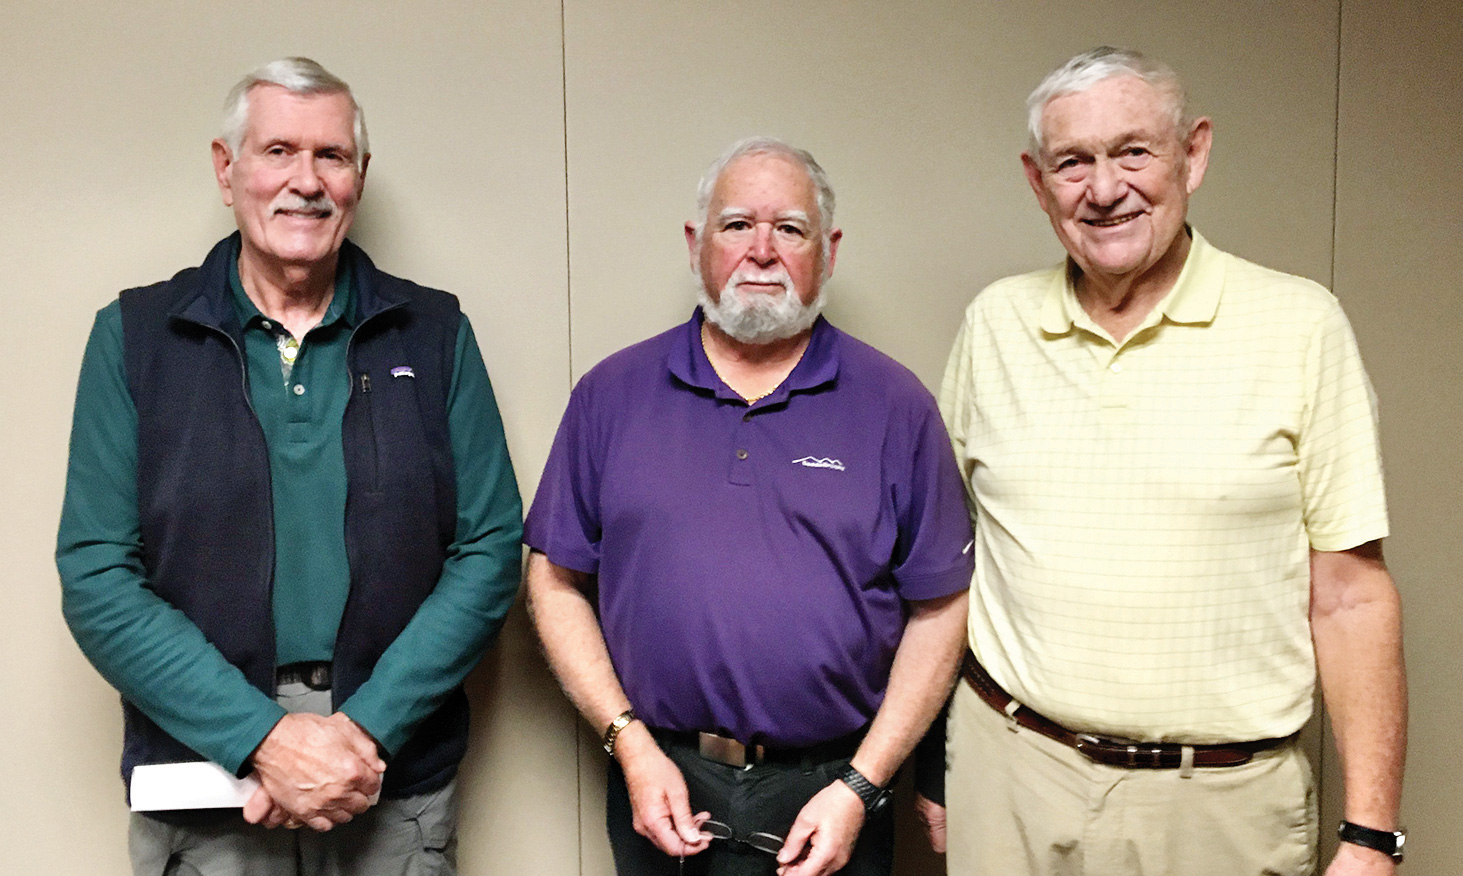 SB Men’s Niner officers (left to right): Gary Brunelle, Jay Love, and Gary Beeler